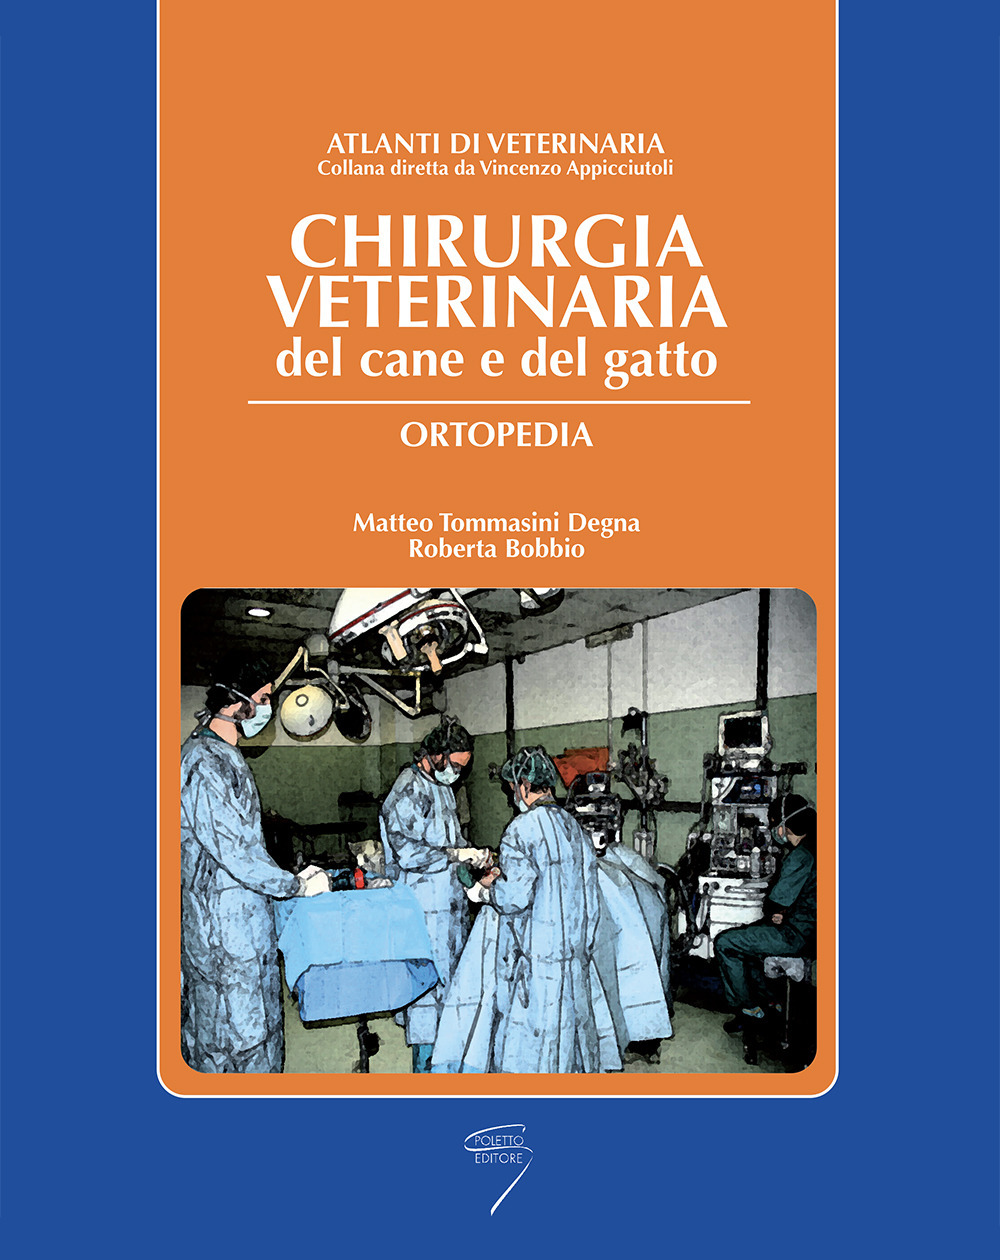 Image of Chirurgica veterinaria del cane e del gatto. Ortopedia